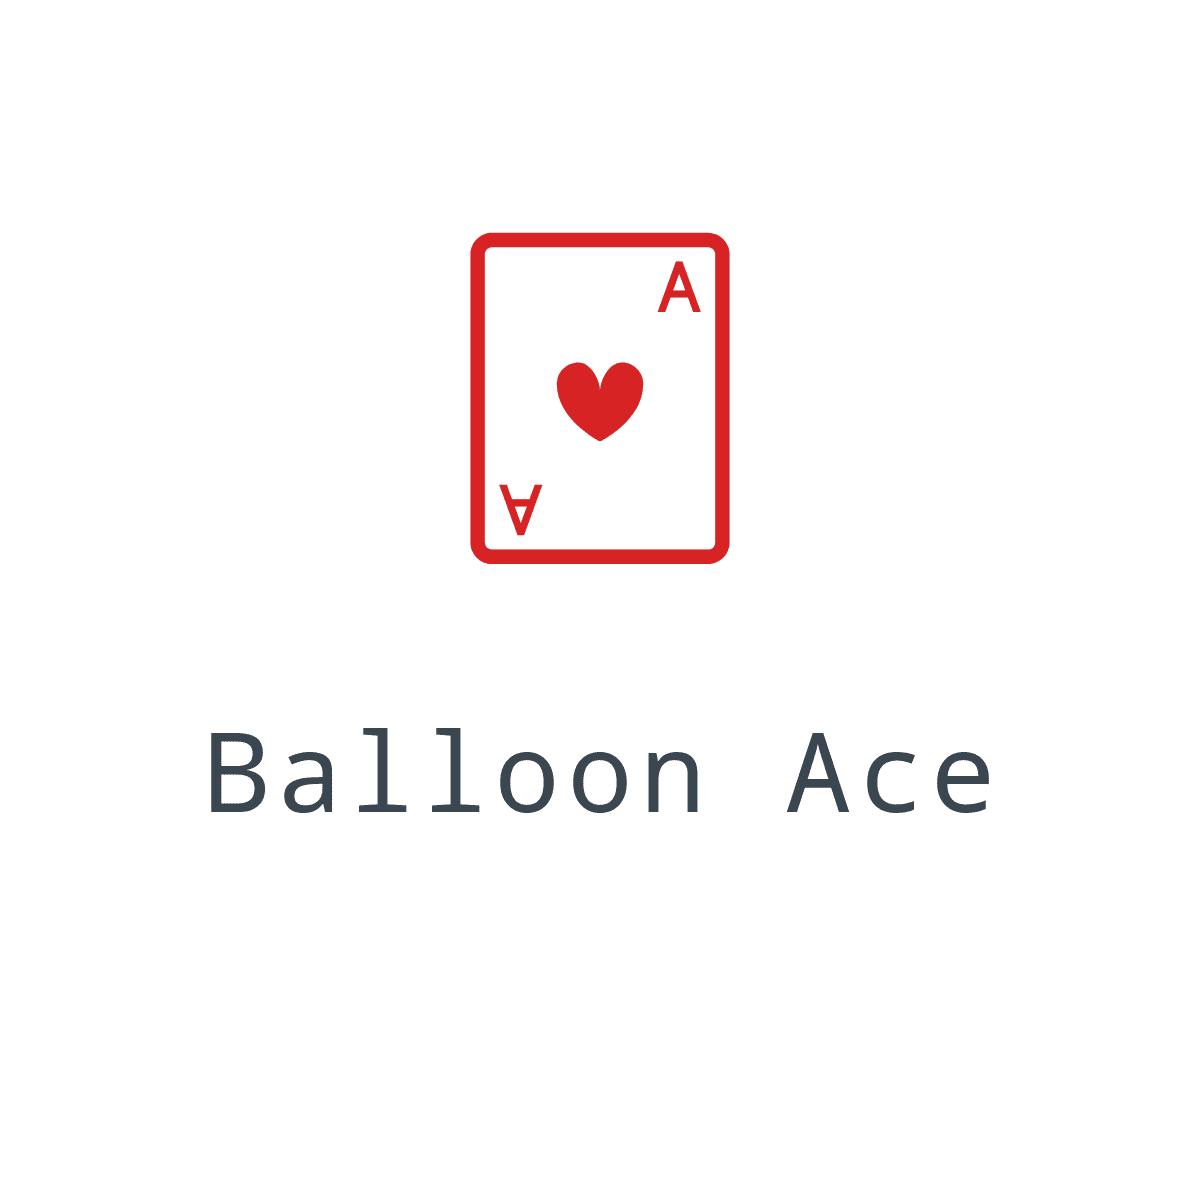 Balloon Ace logo